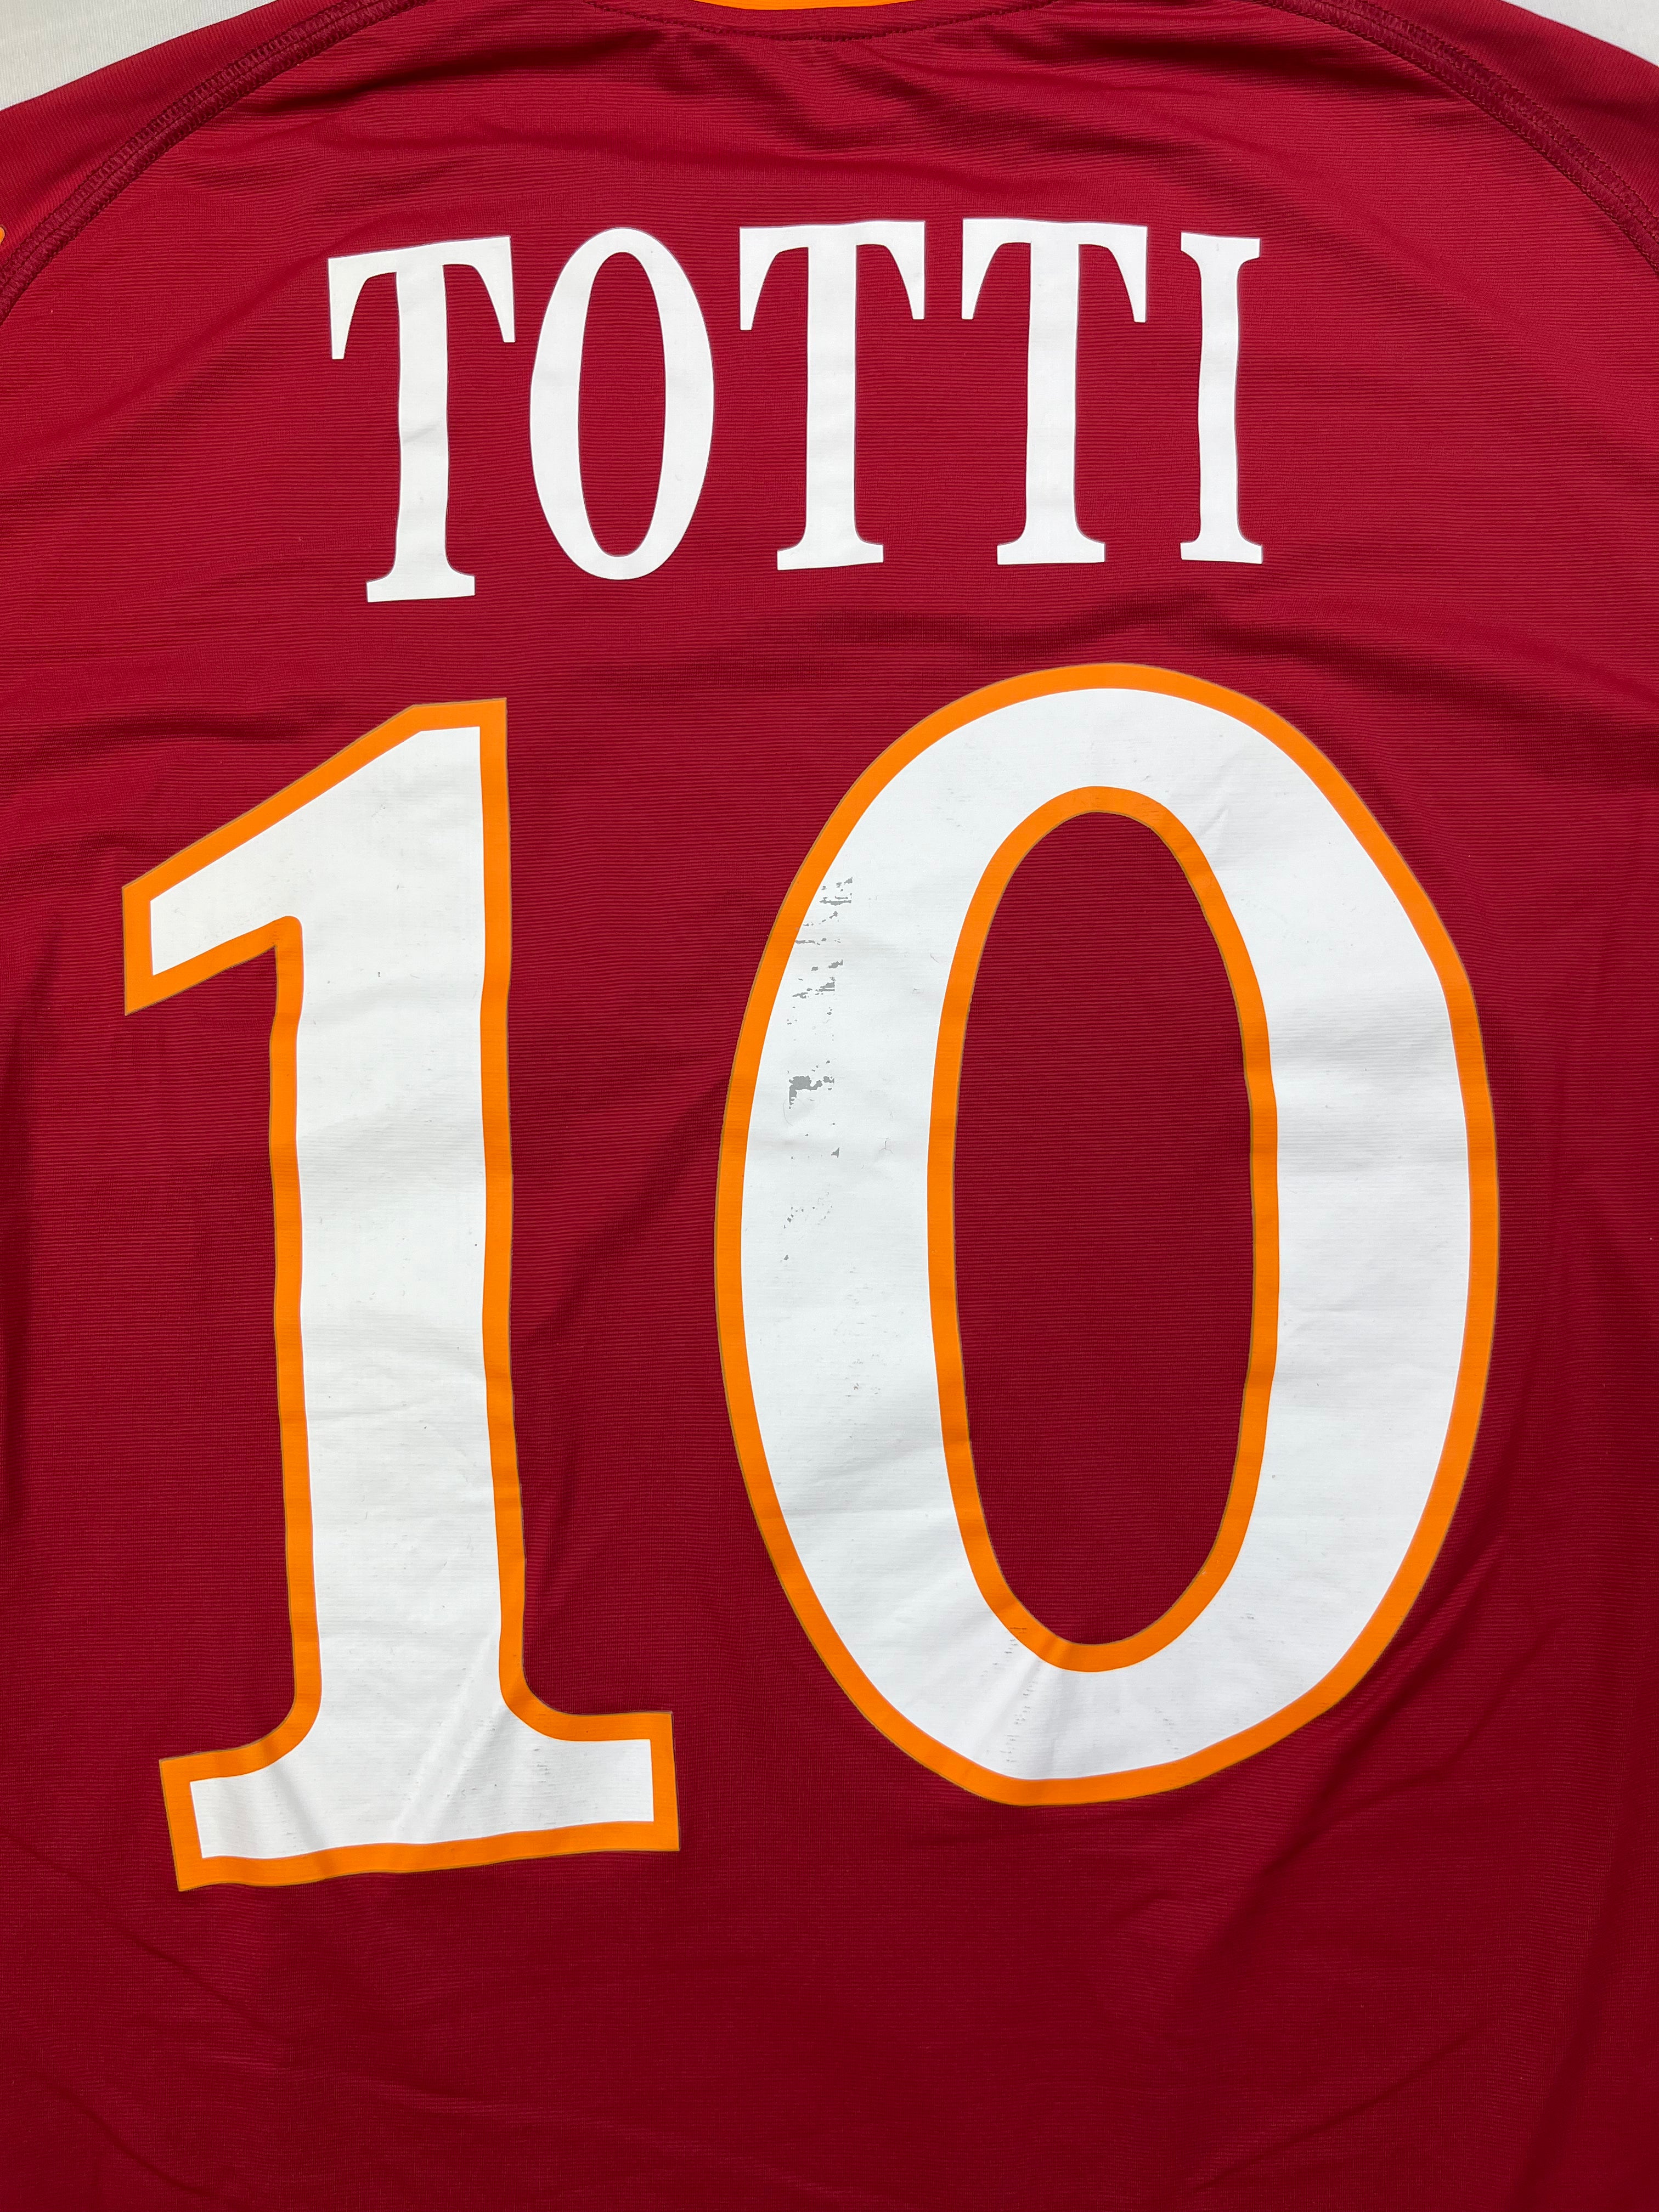 2009/10 Roma Home Shirt Totti #10 (S) 8/10